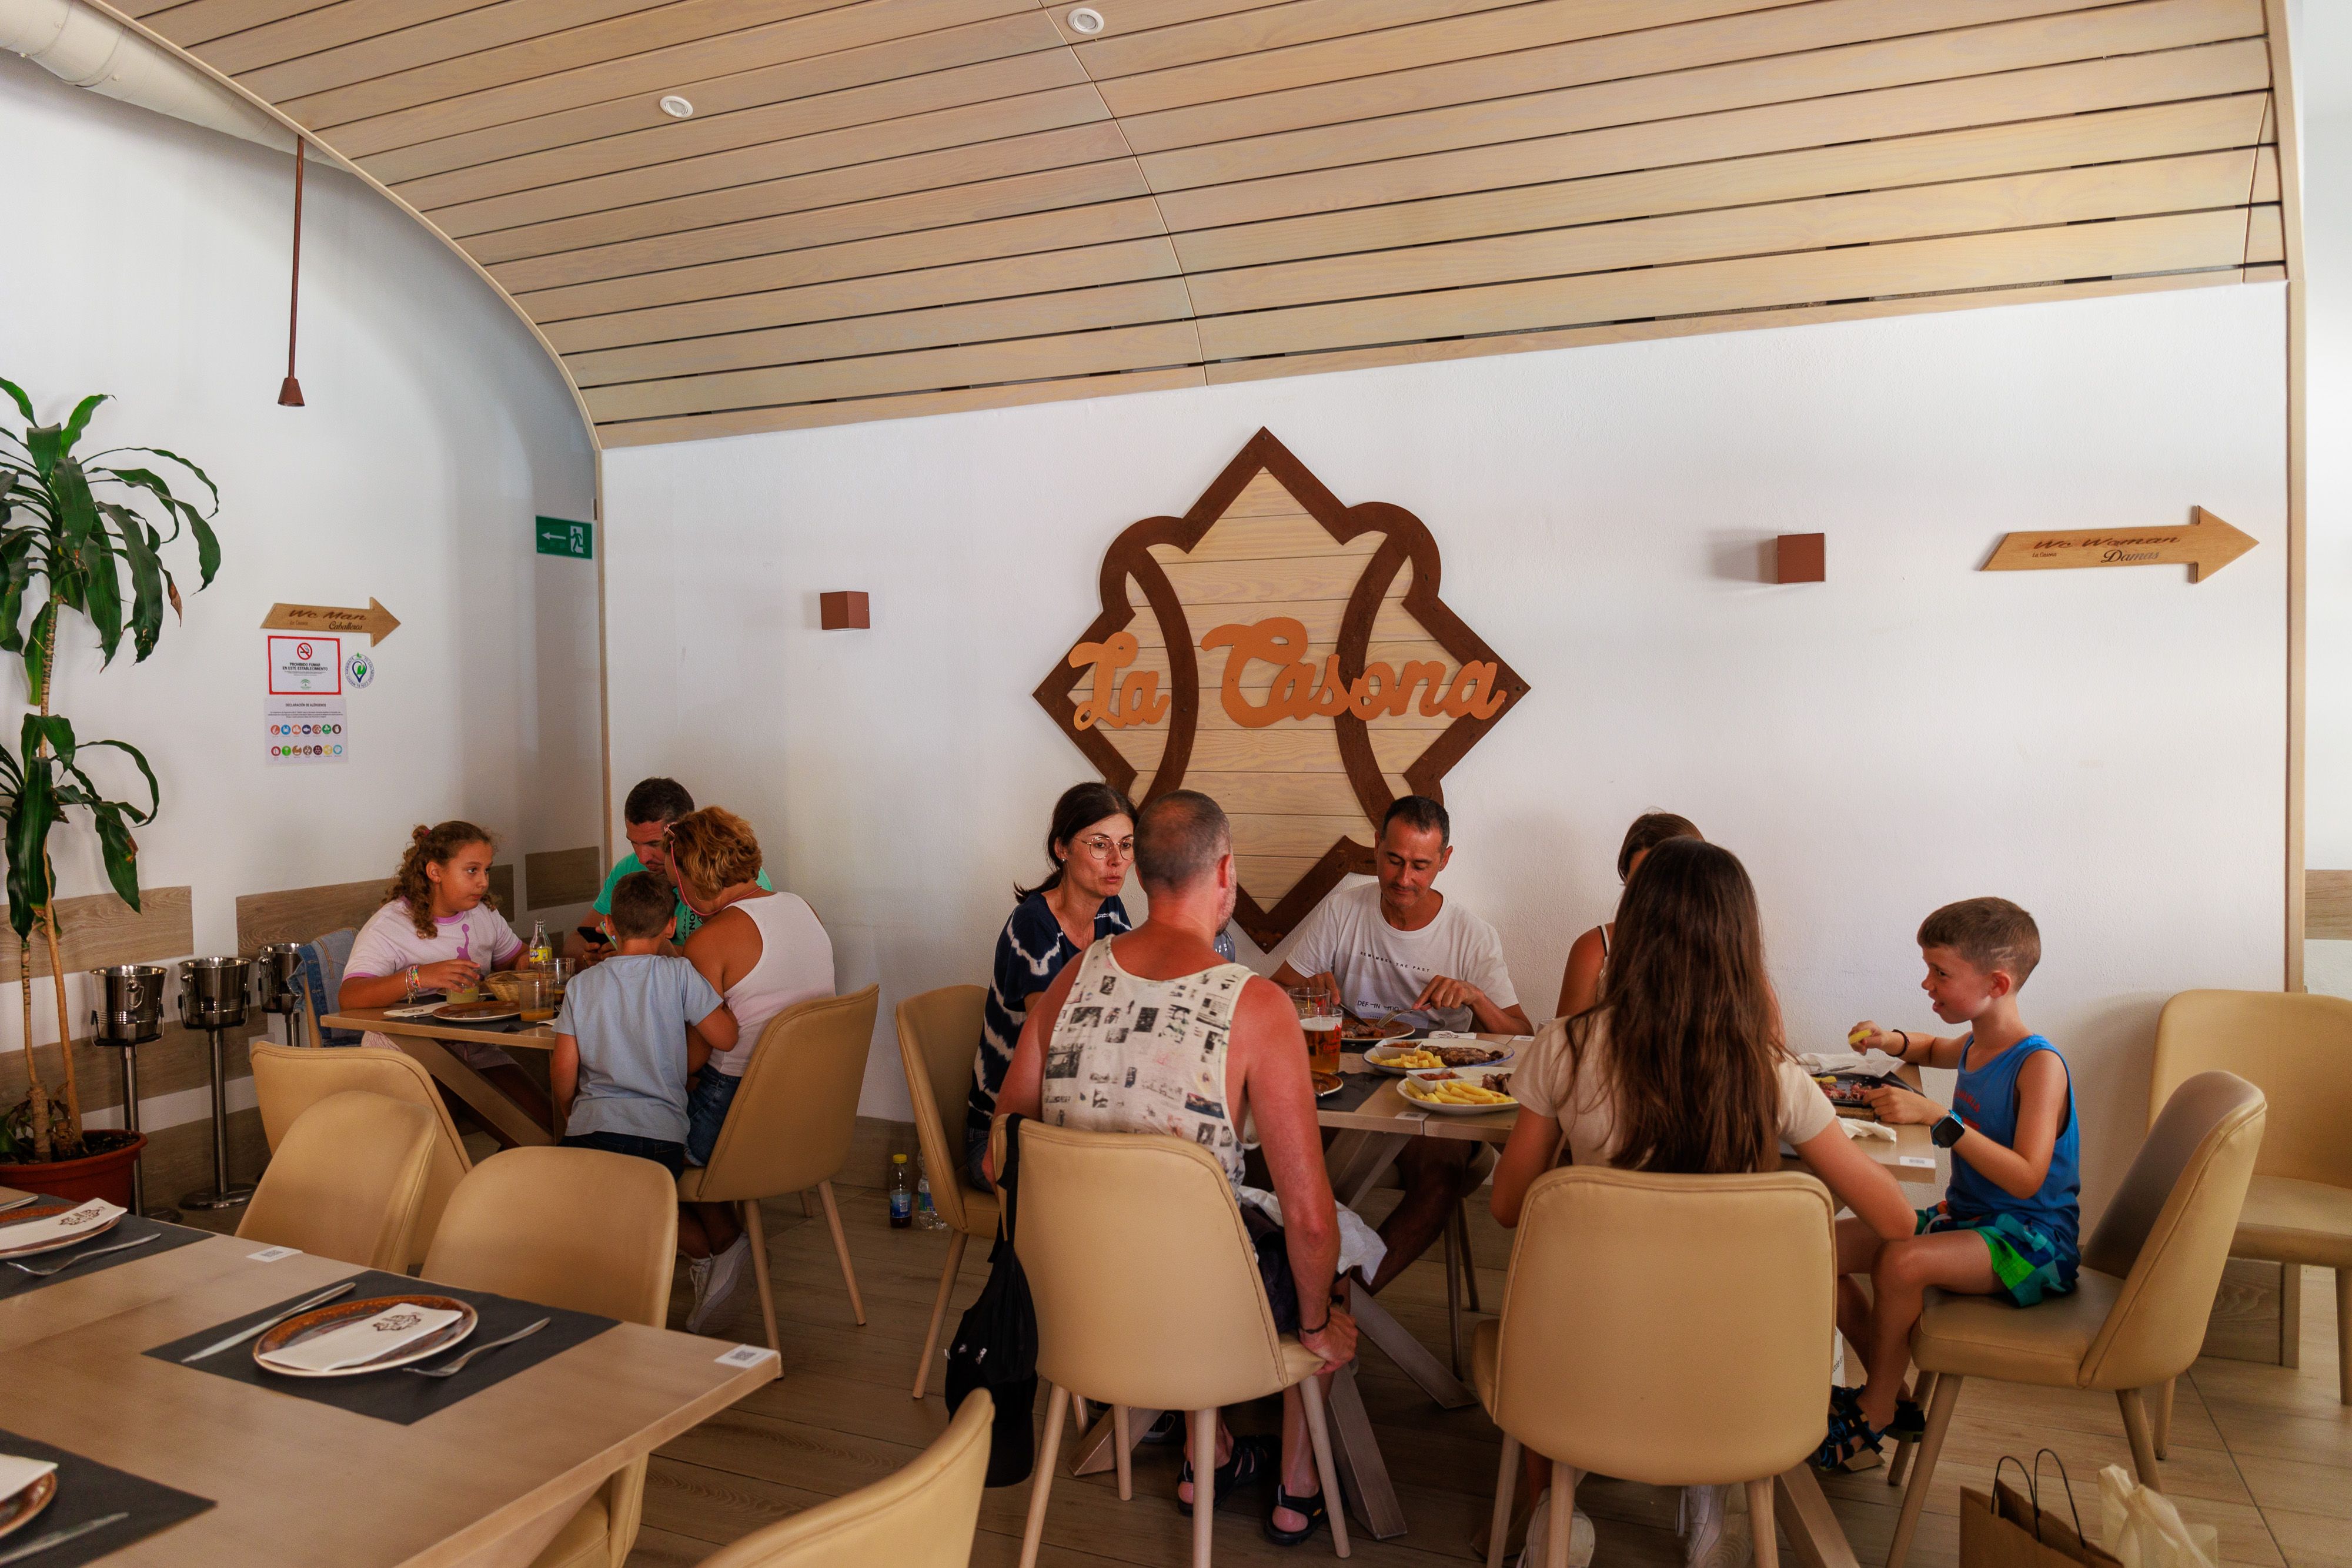 Salón de La Casona, restaurante ubicado en el entorno del puerto de Tarifa.   JUAN CARLOS TORO